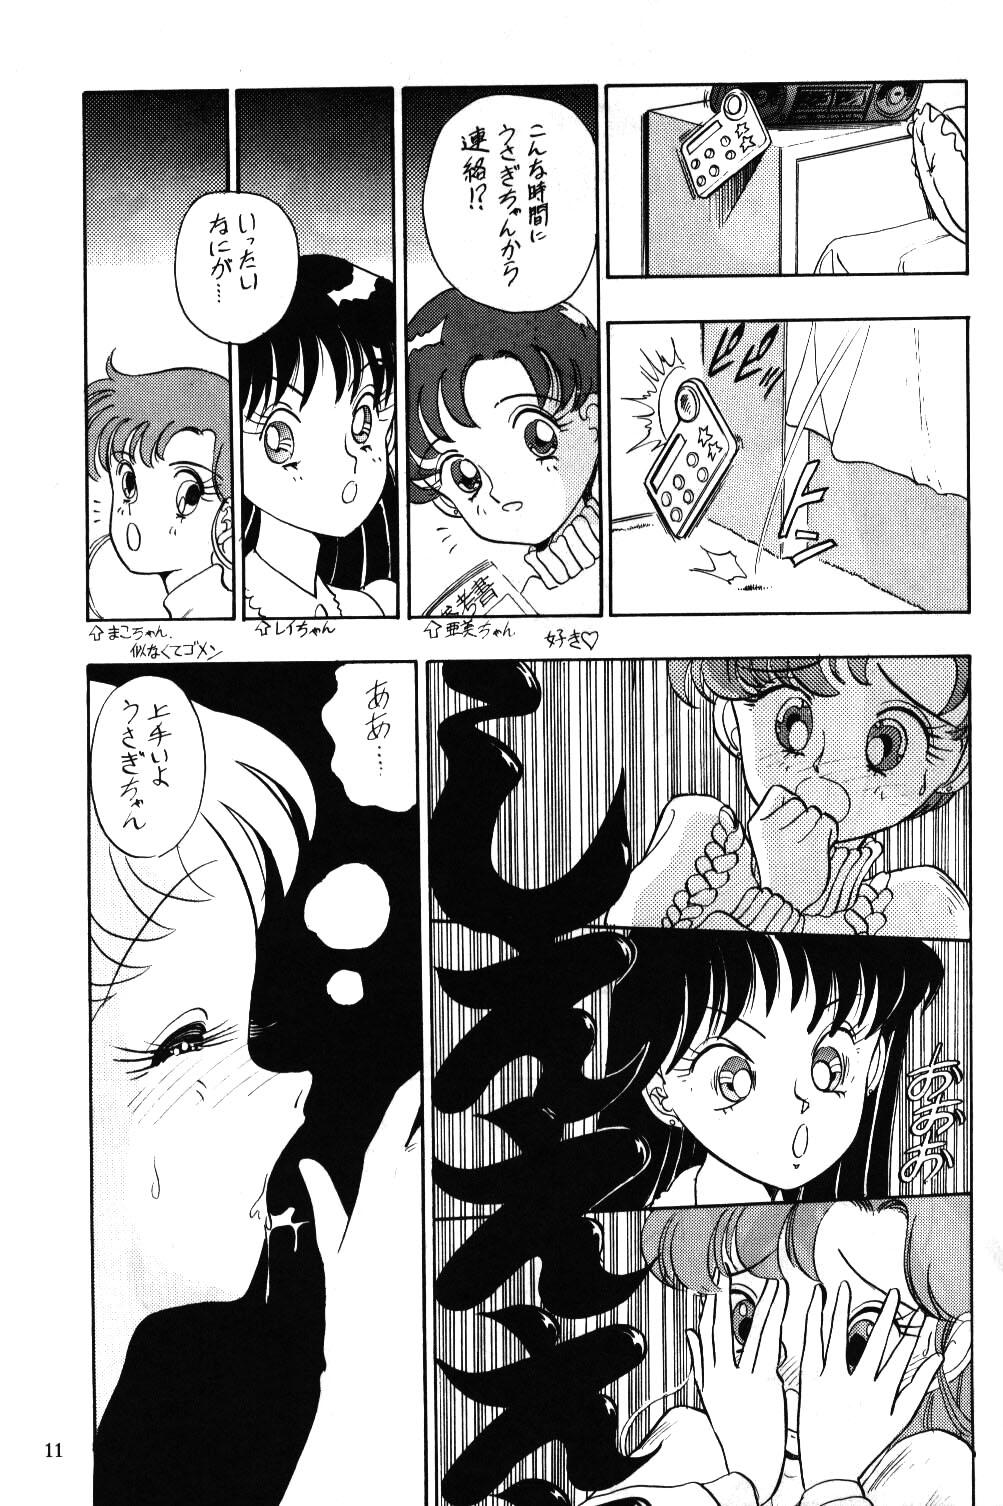 Rebolando Air Jordan - Sailor moon Culote - Page 12